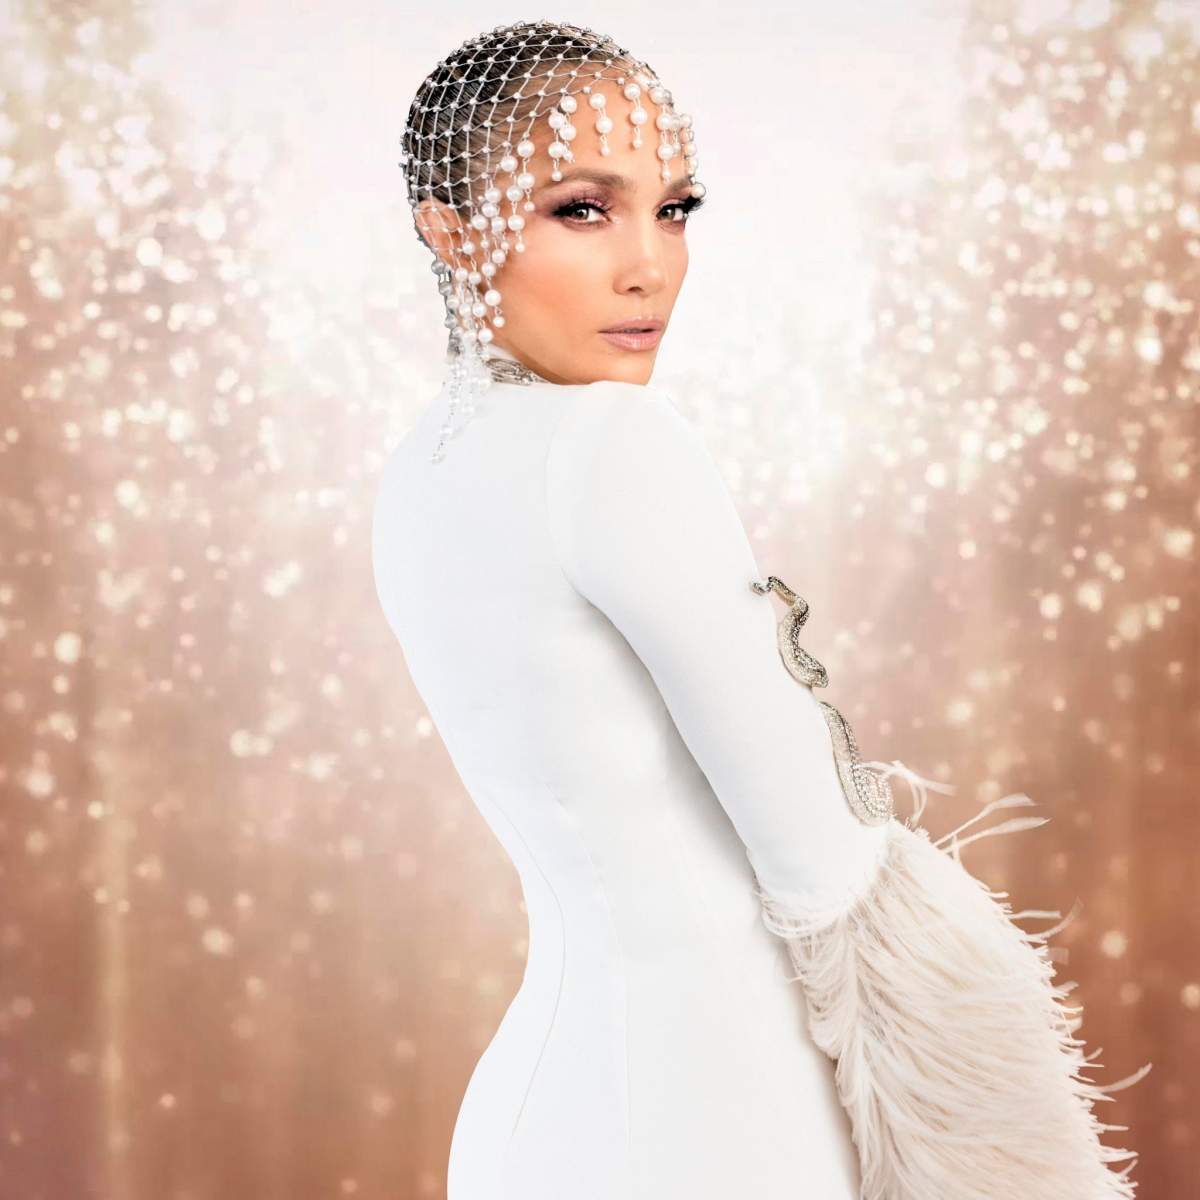 Jennifer Lopez, apariție strălucitoare la cea de-a doua nuntă cu Ben Affleck. Cântăreața a purtat o rochie semnată Ralph Lauren